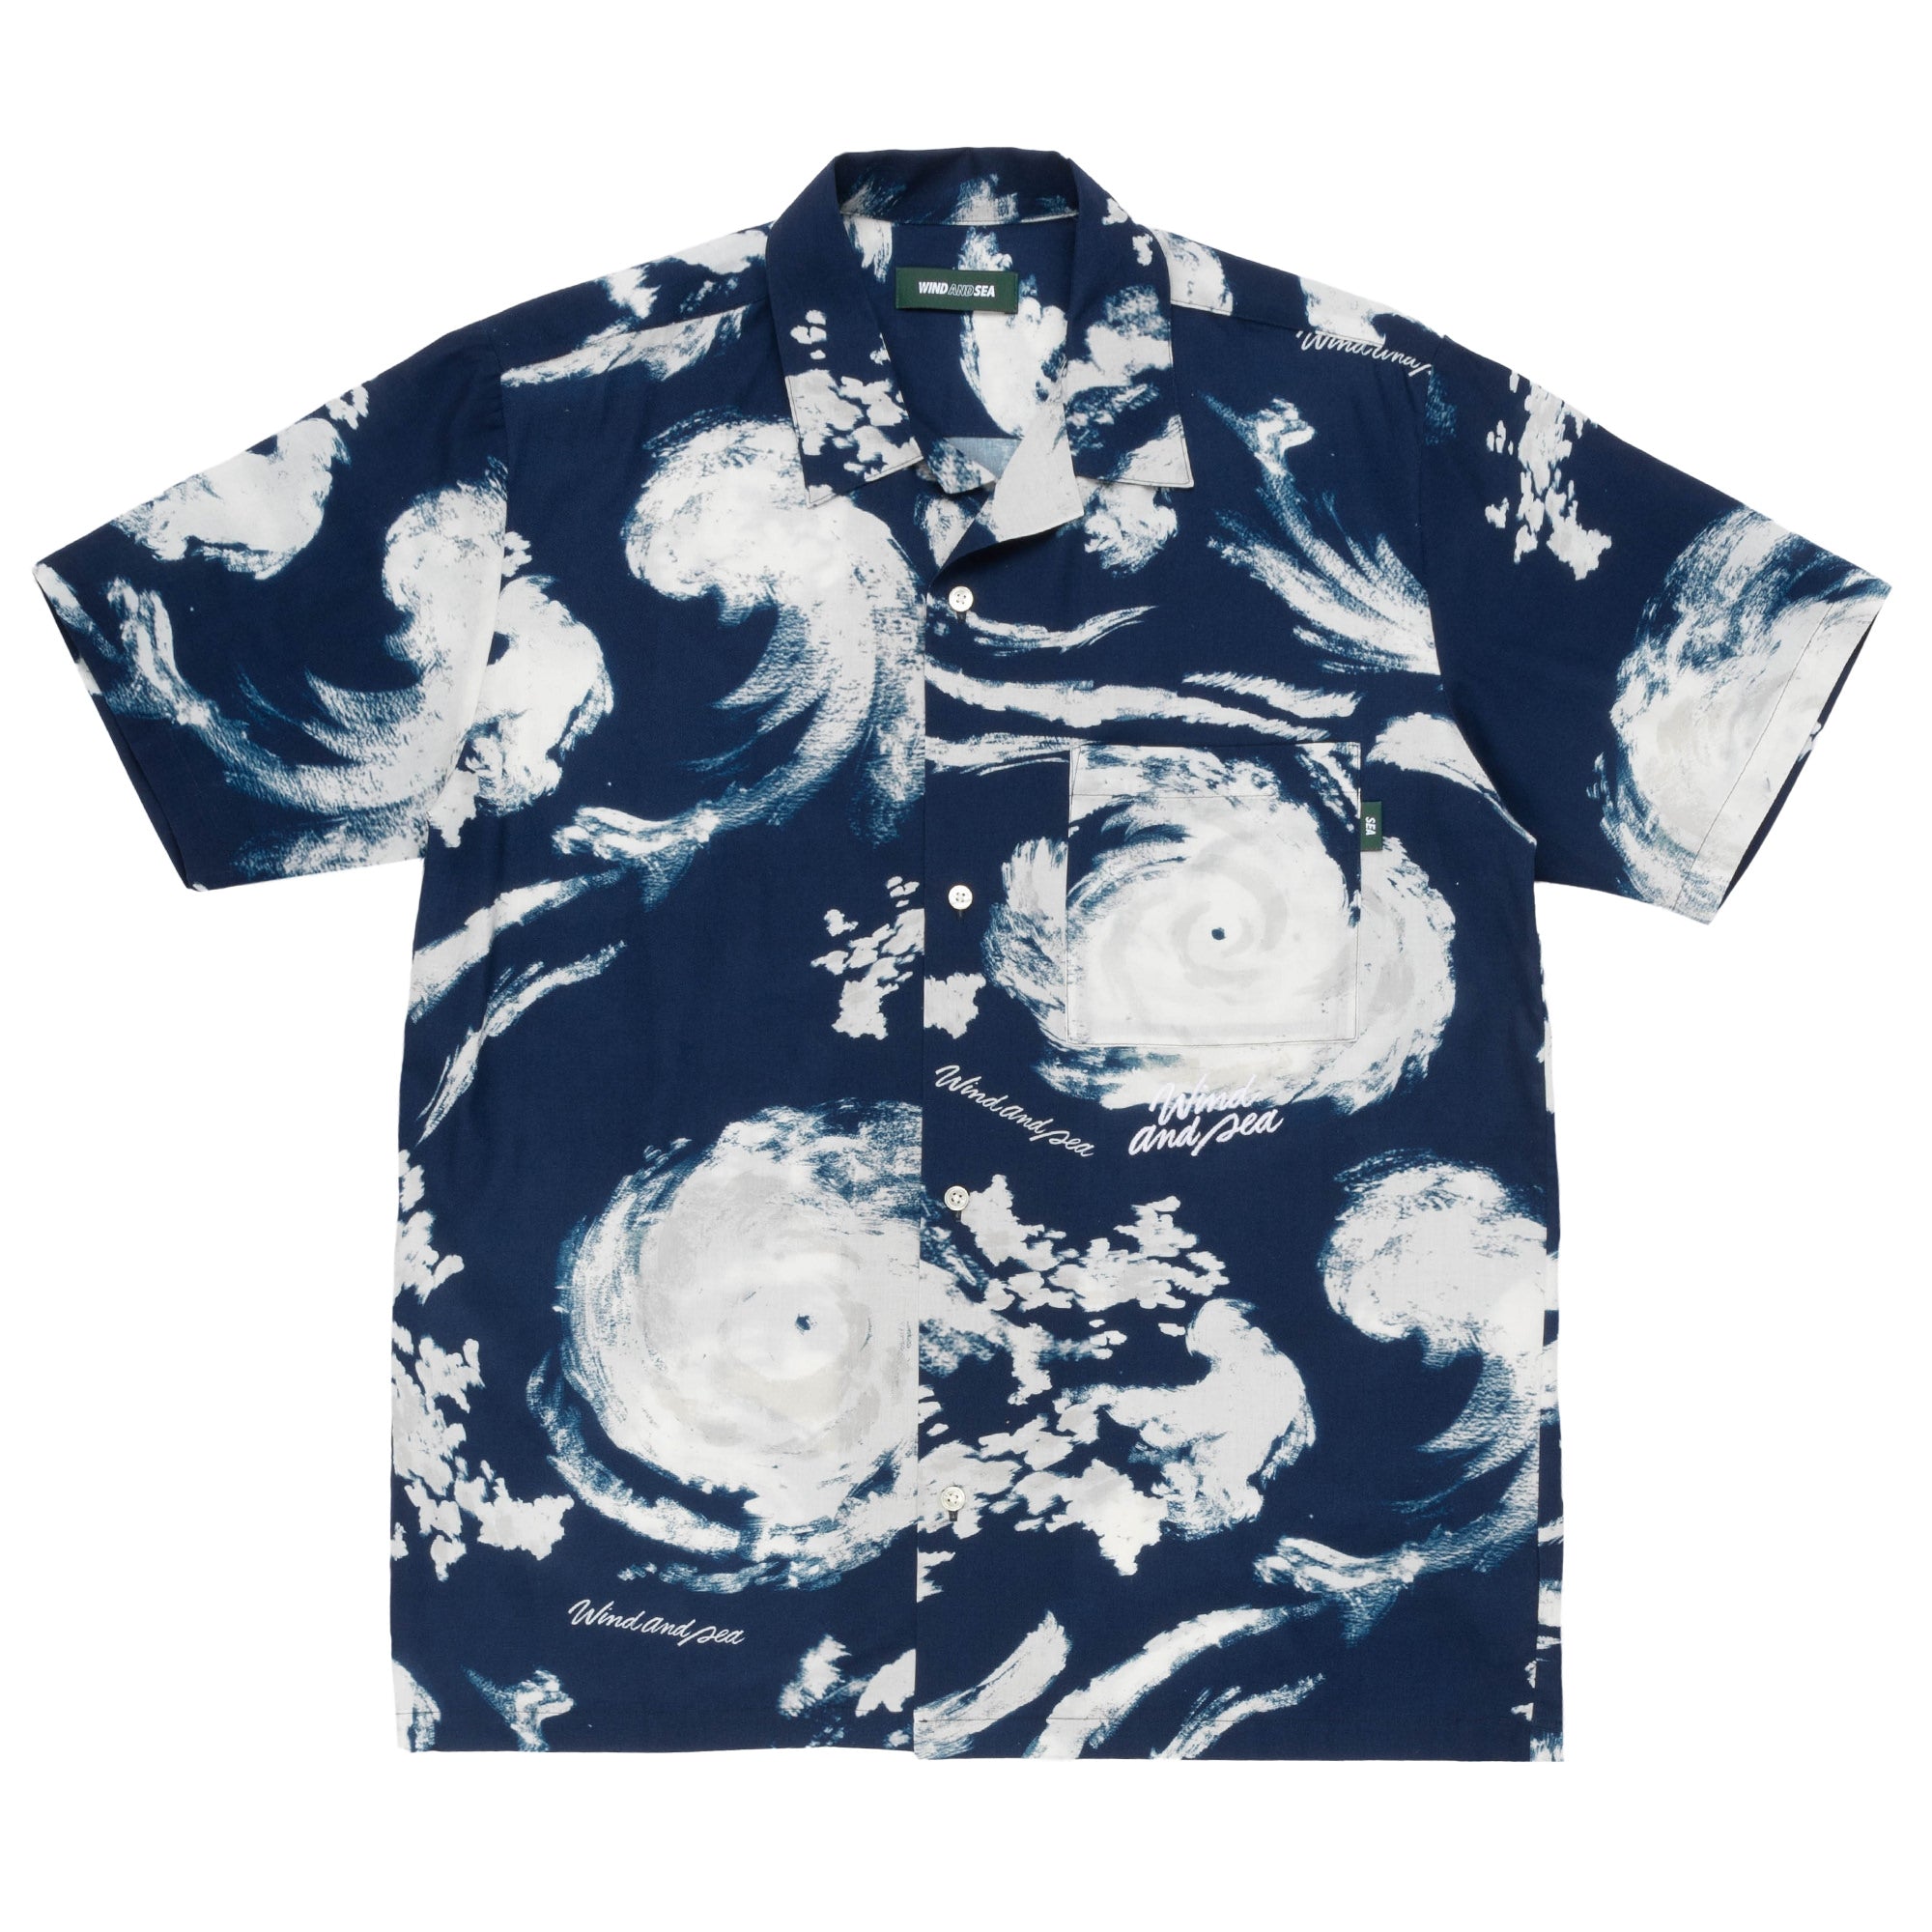 Emporio Armani abstract print shirt